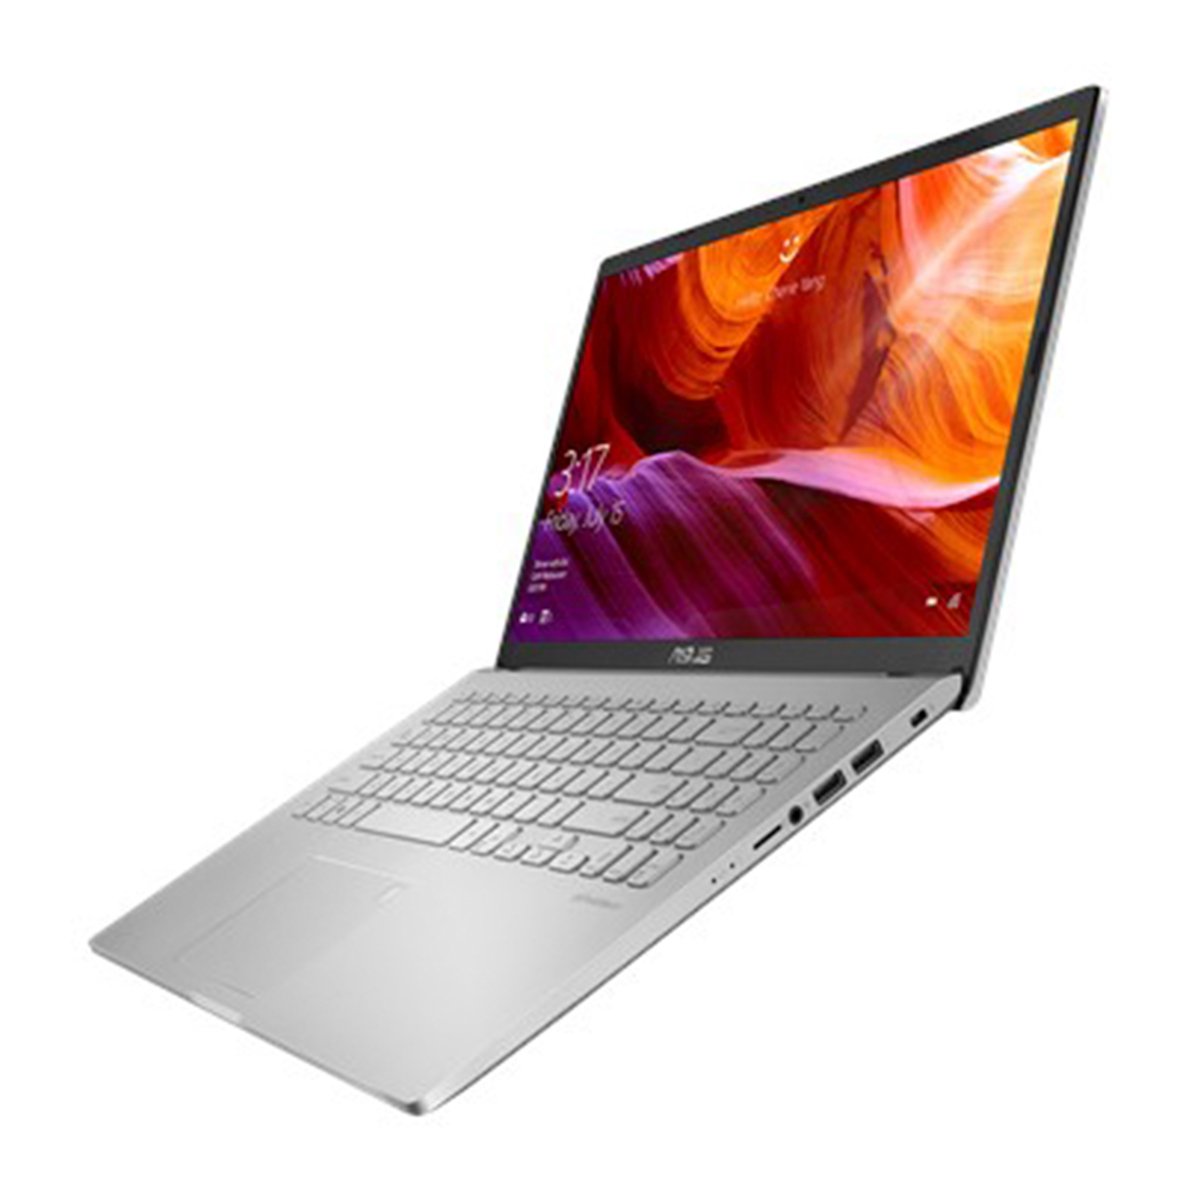 Asus Notebook X509JP-EJ099T,Intel Core i7-1065G7,8GB RAM,512GB SSD,2GB MX330,15.6" FHD LED,Windows 10